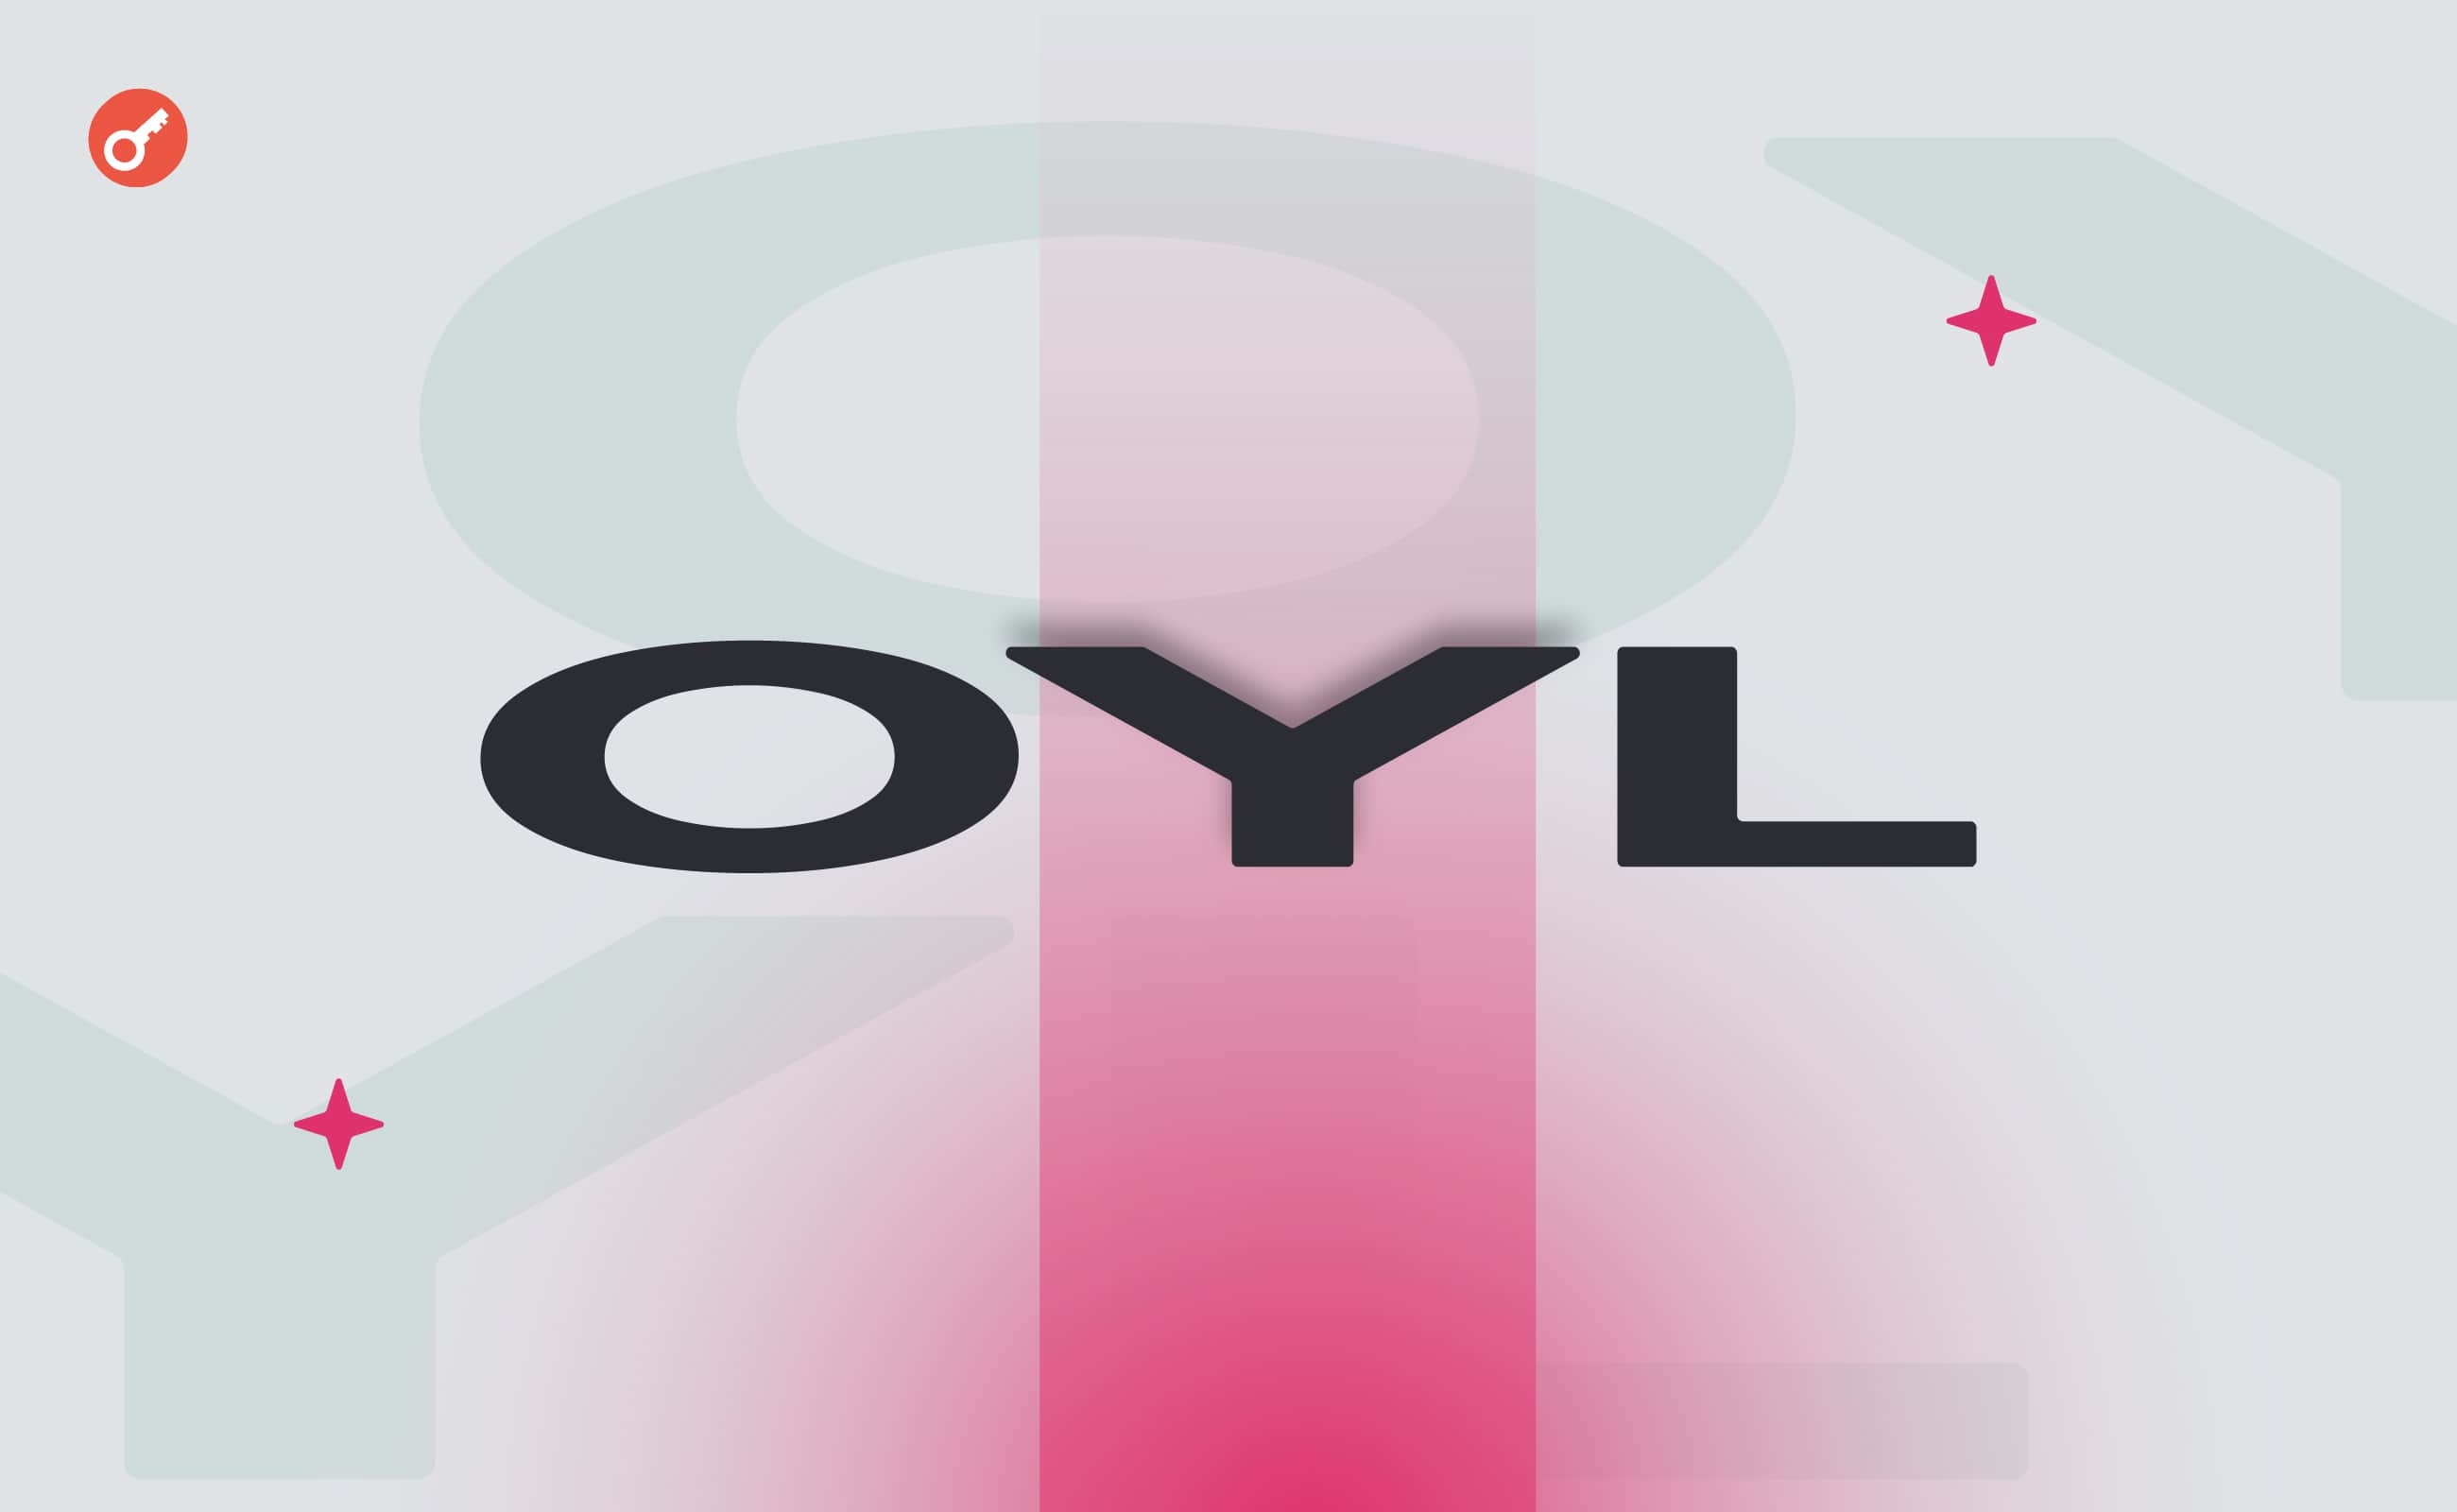 Проєкт Oyl залучив $3 млн за участю Артура Хейса. Головний колаж новини.